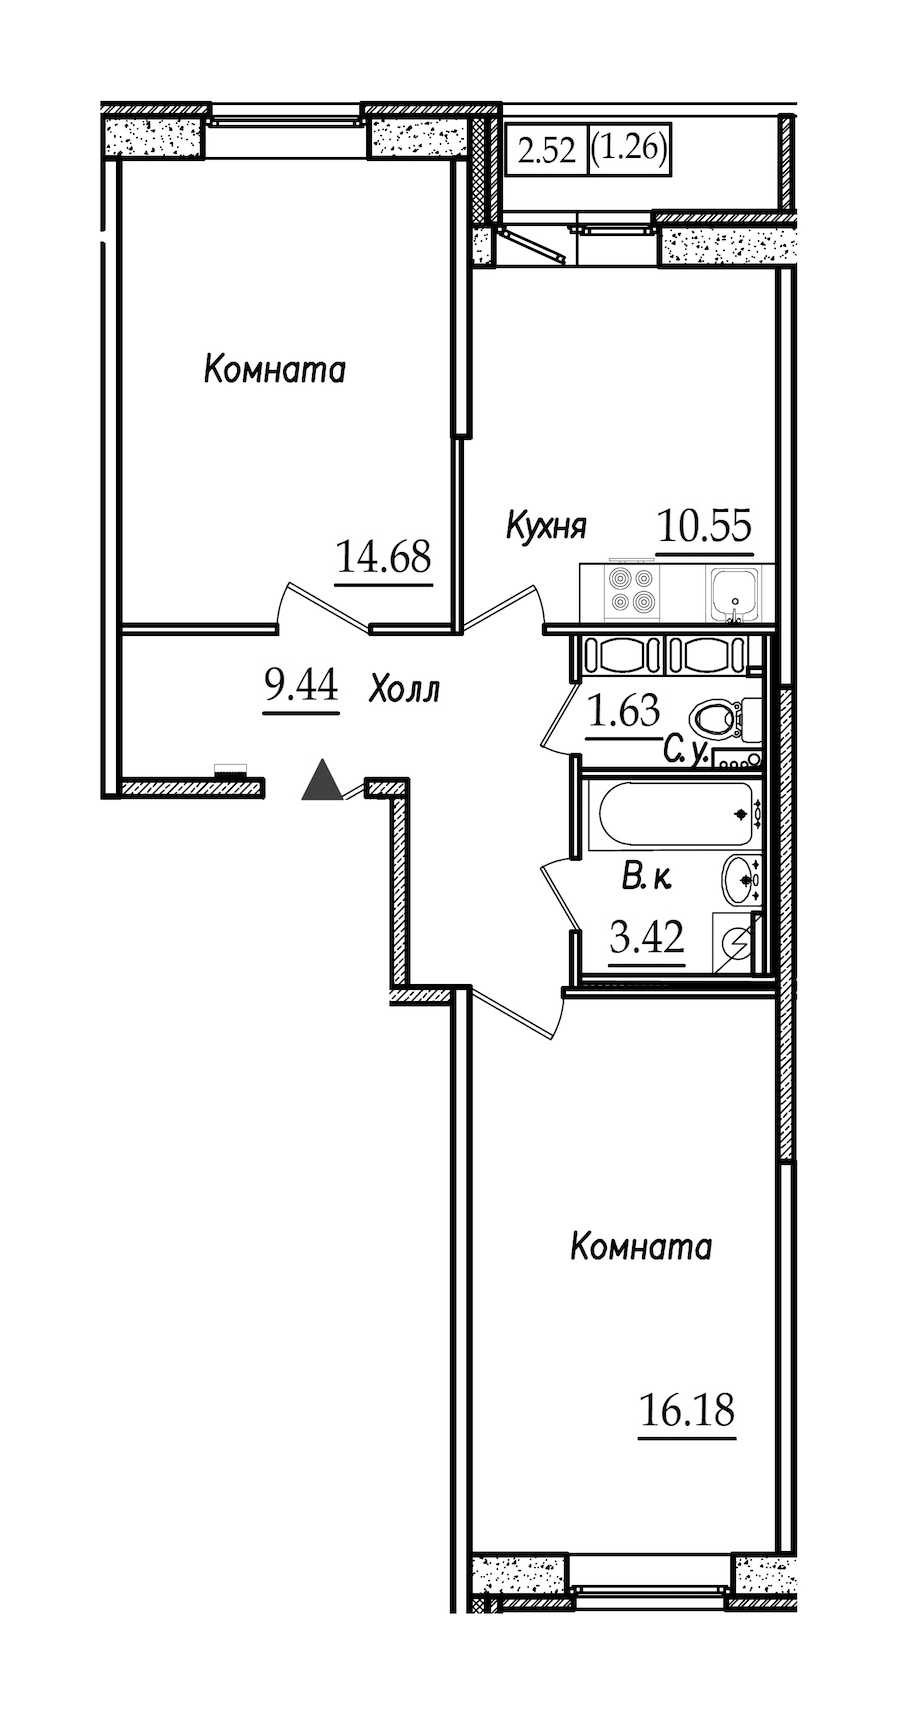 Двухкомнатная квартира в СПб Реновация: площадь 57.16 м2 , этаж: 9 – купить в Санкт-Петербурге